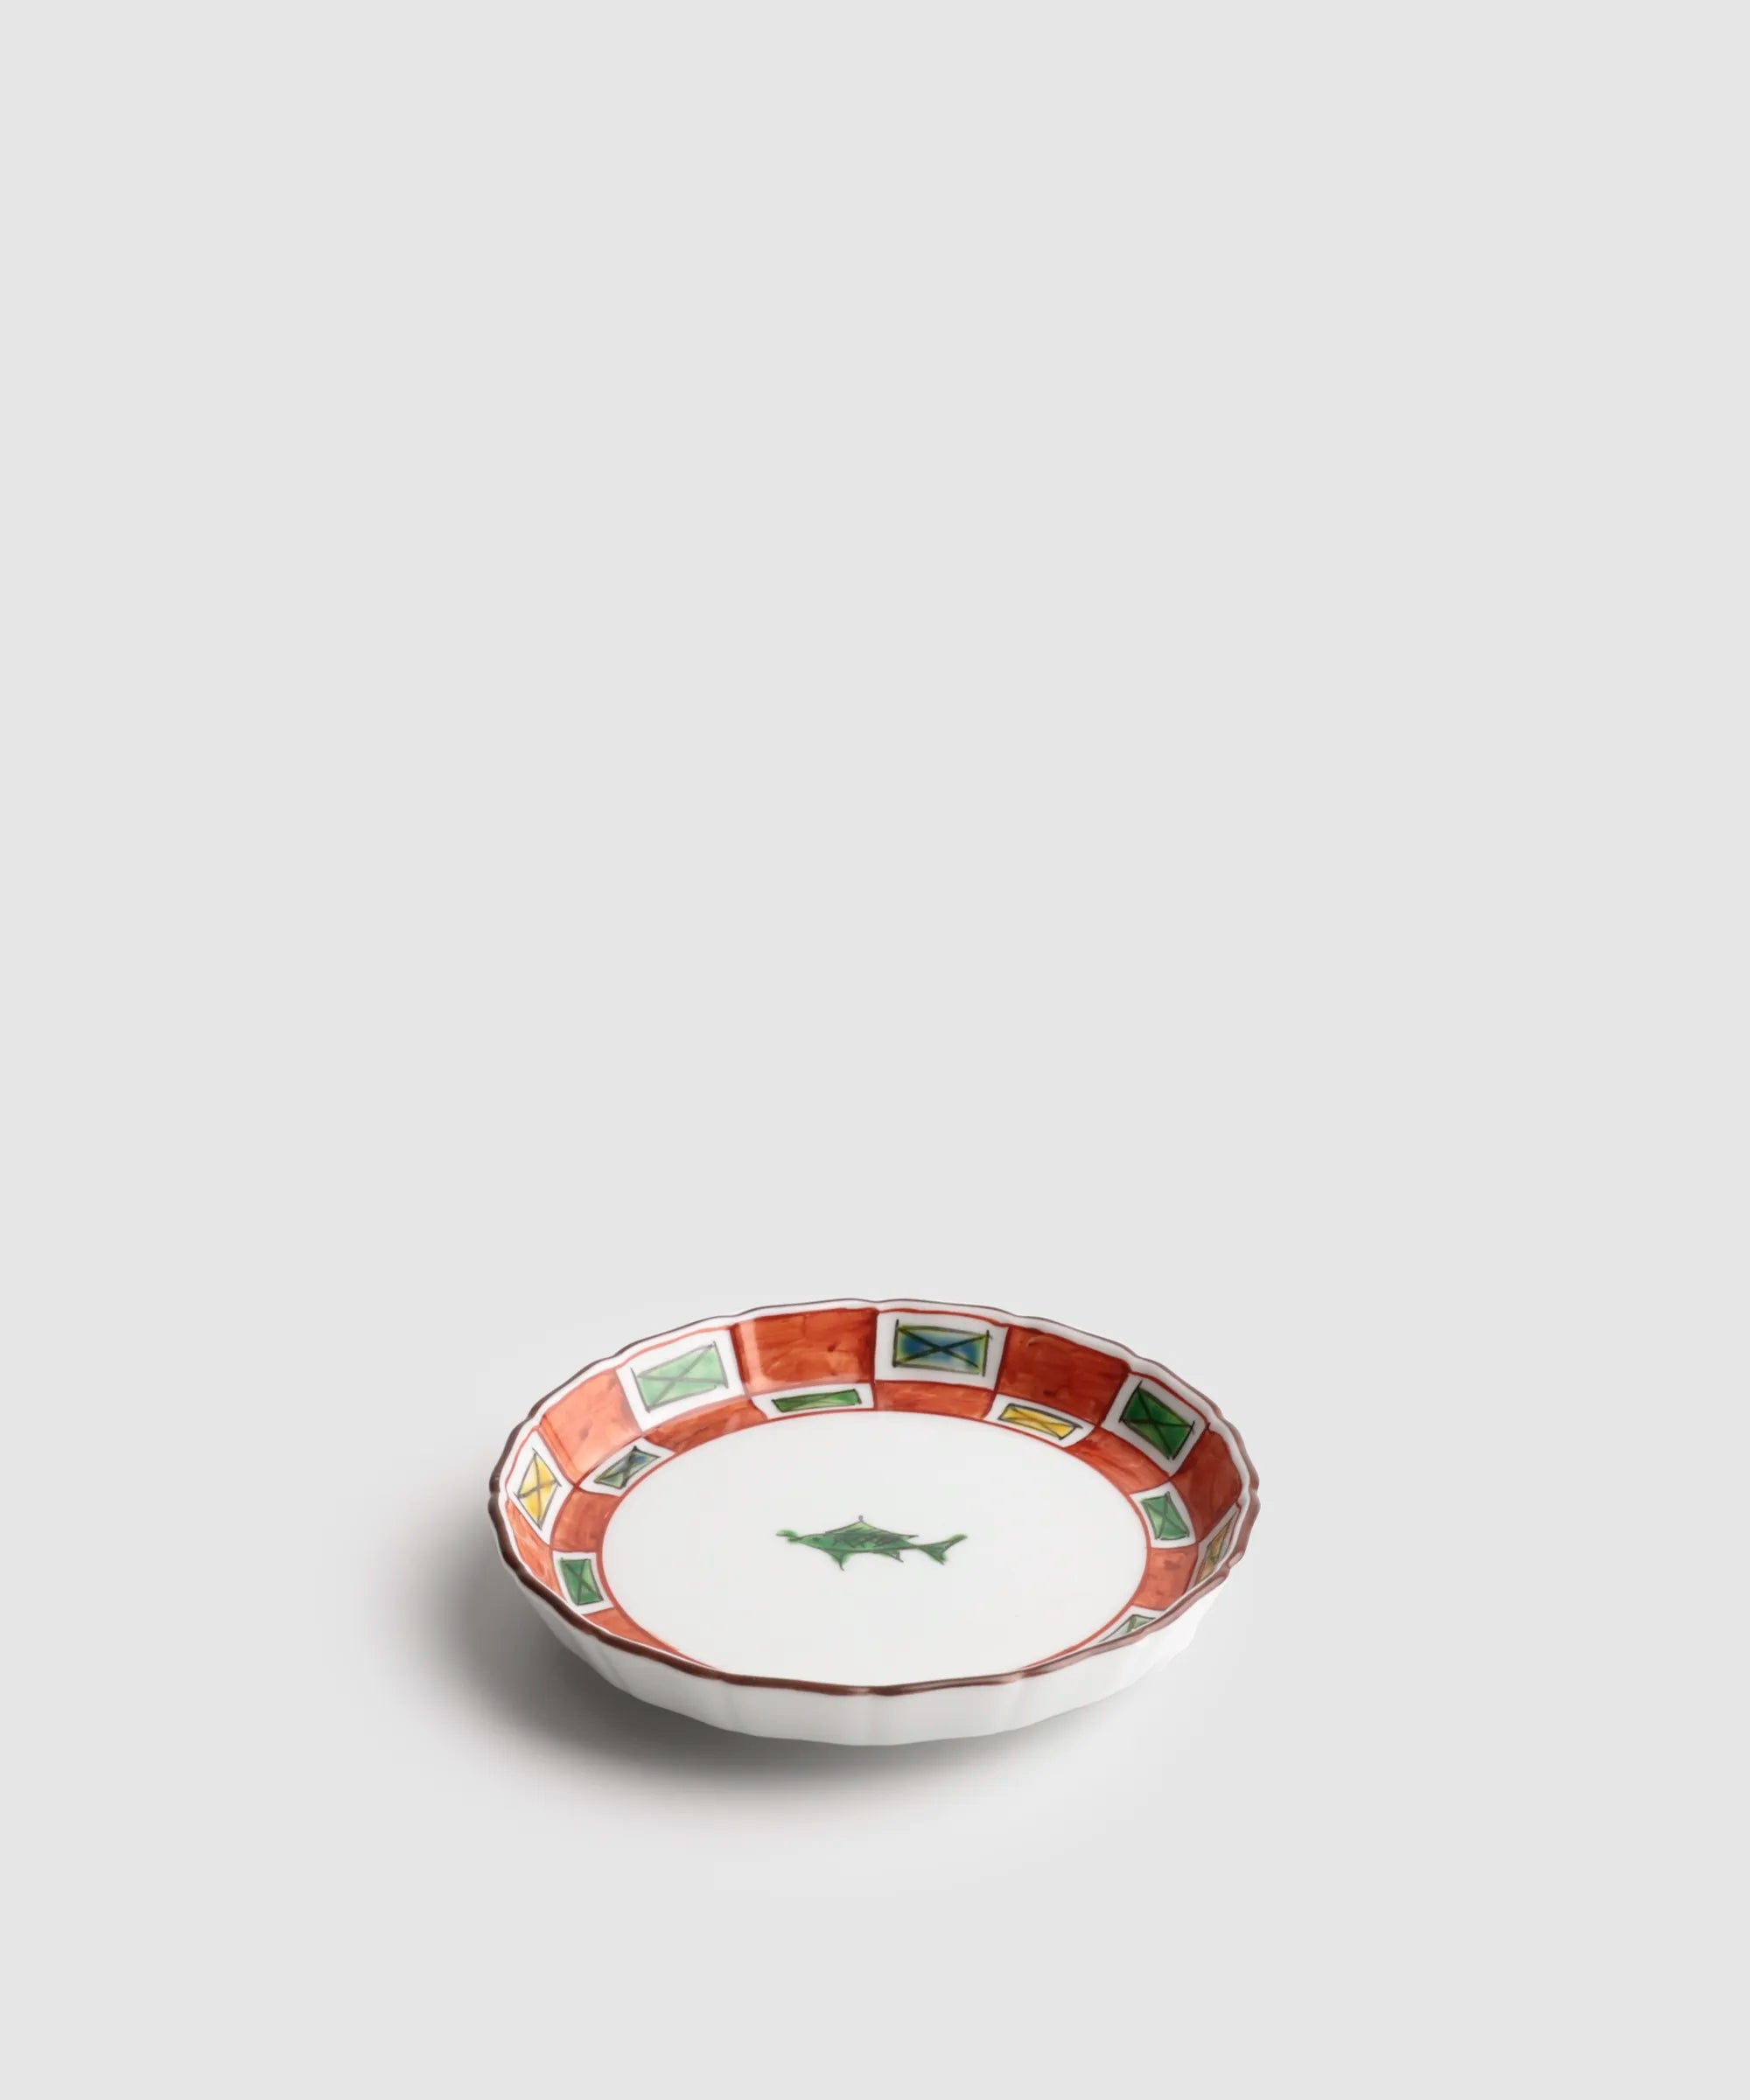 色絵市松魚文 - 桔梗渕4.5寸皿